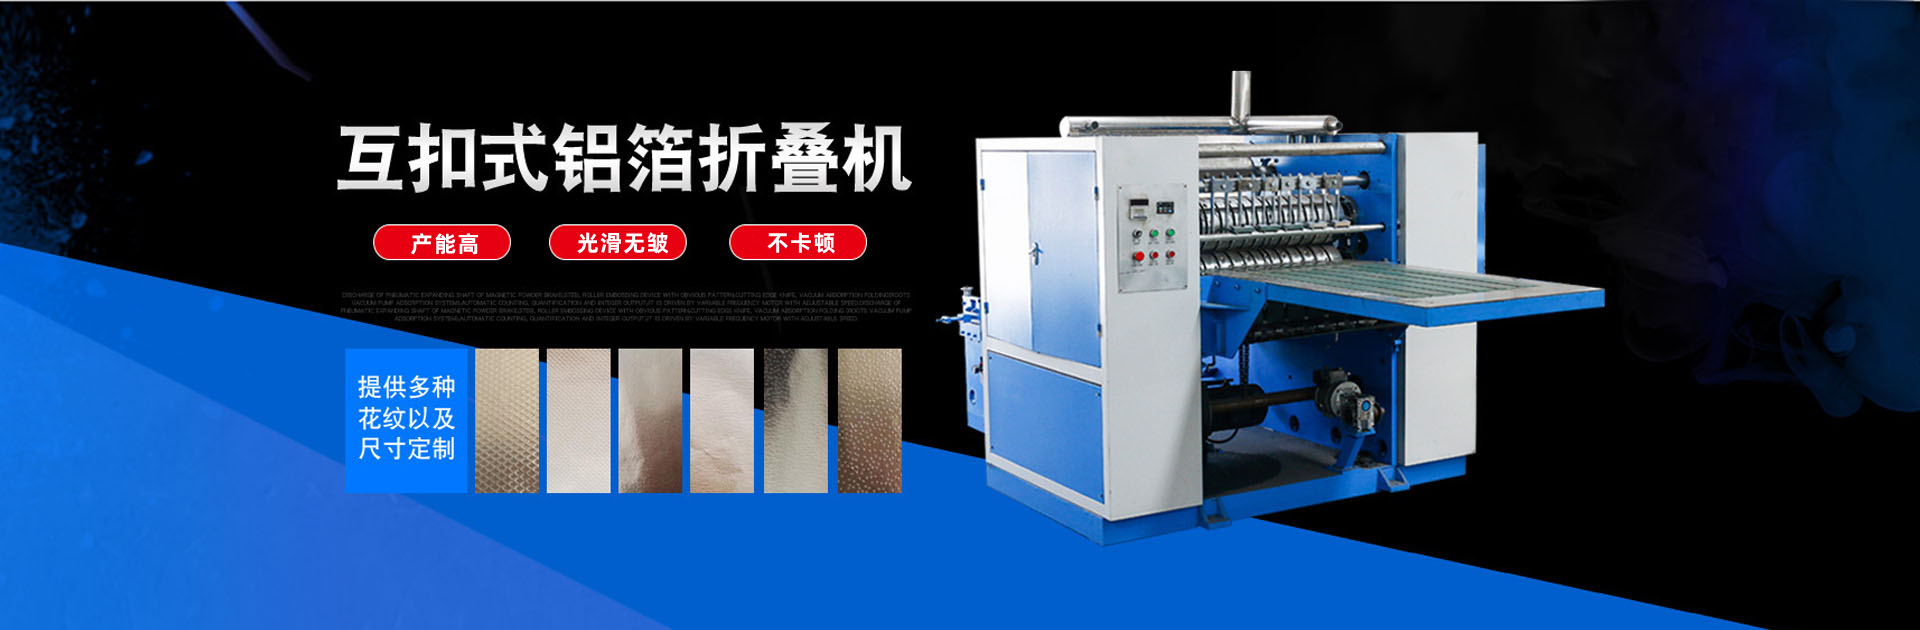 Lianyungang Zhixinjie Machinery Co., Ltd-10年專注研發生產